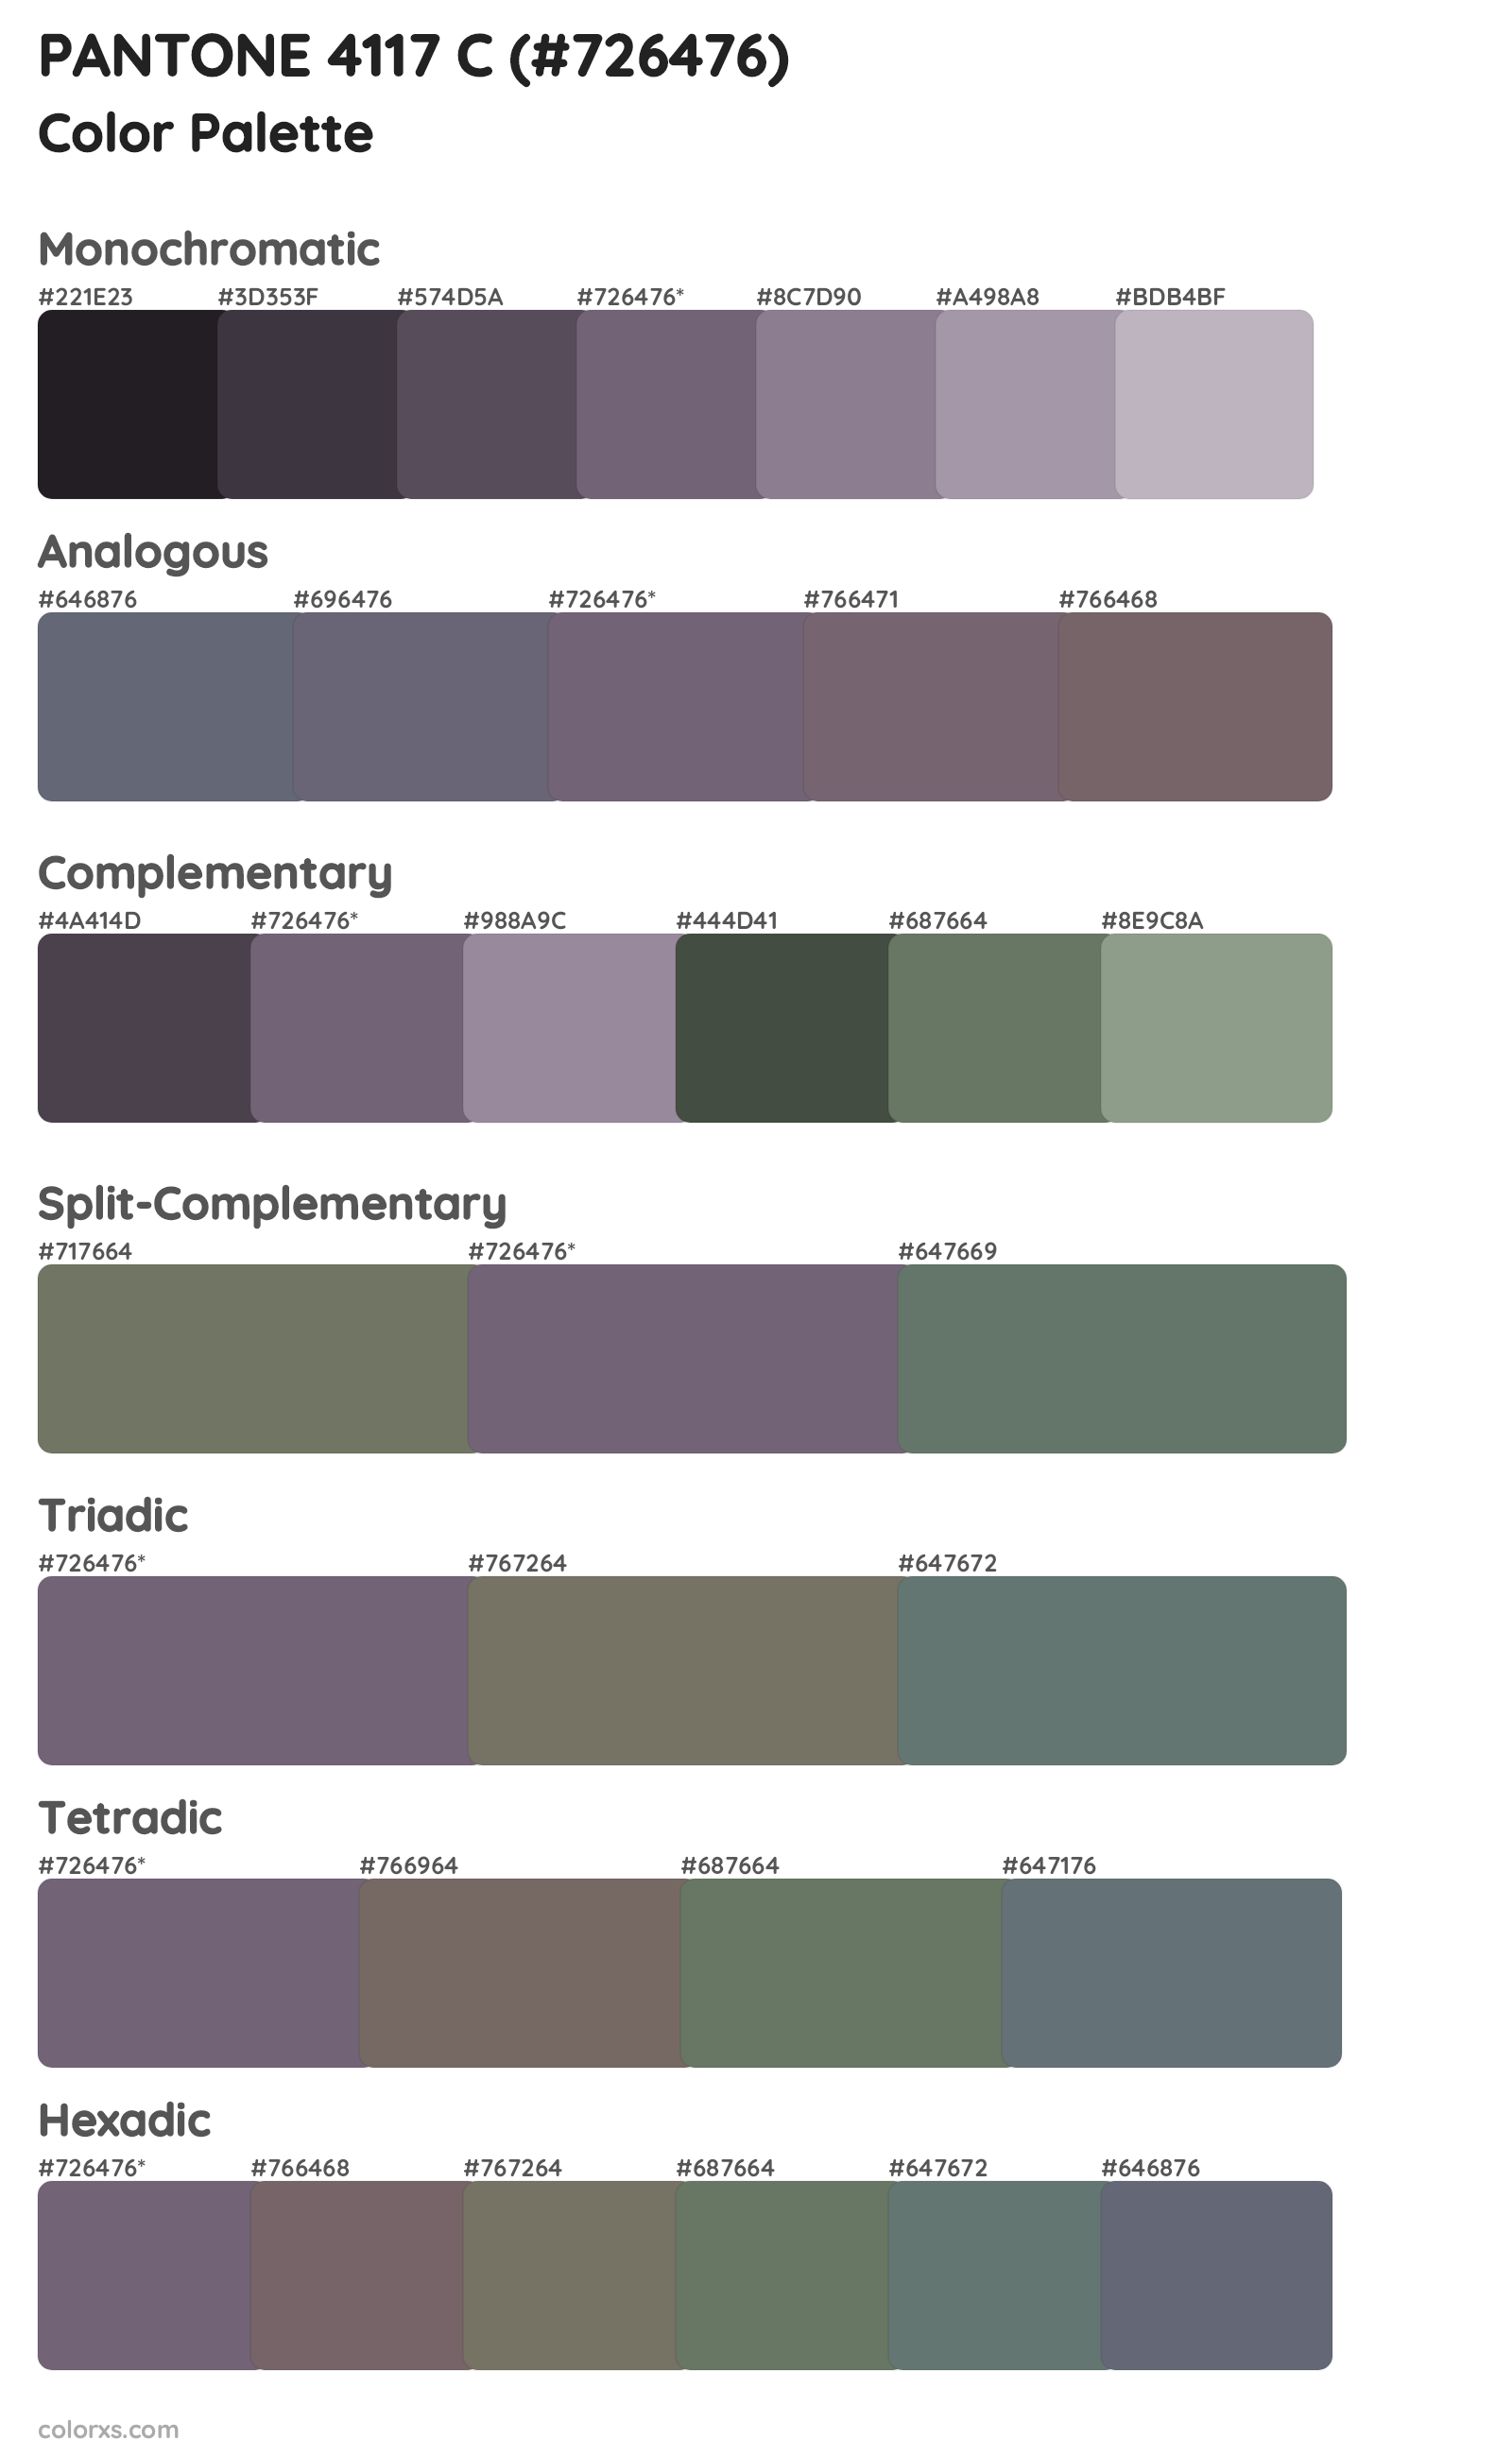 PANTONE 4117 C Color Scheme Palettes